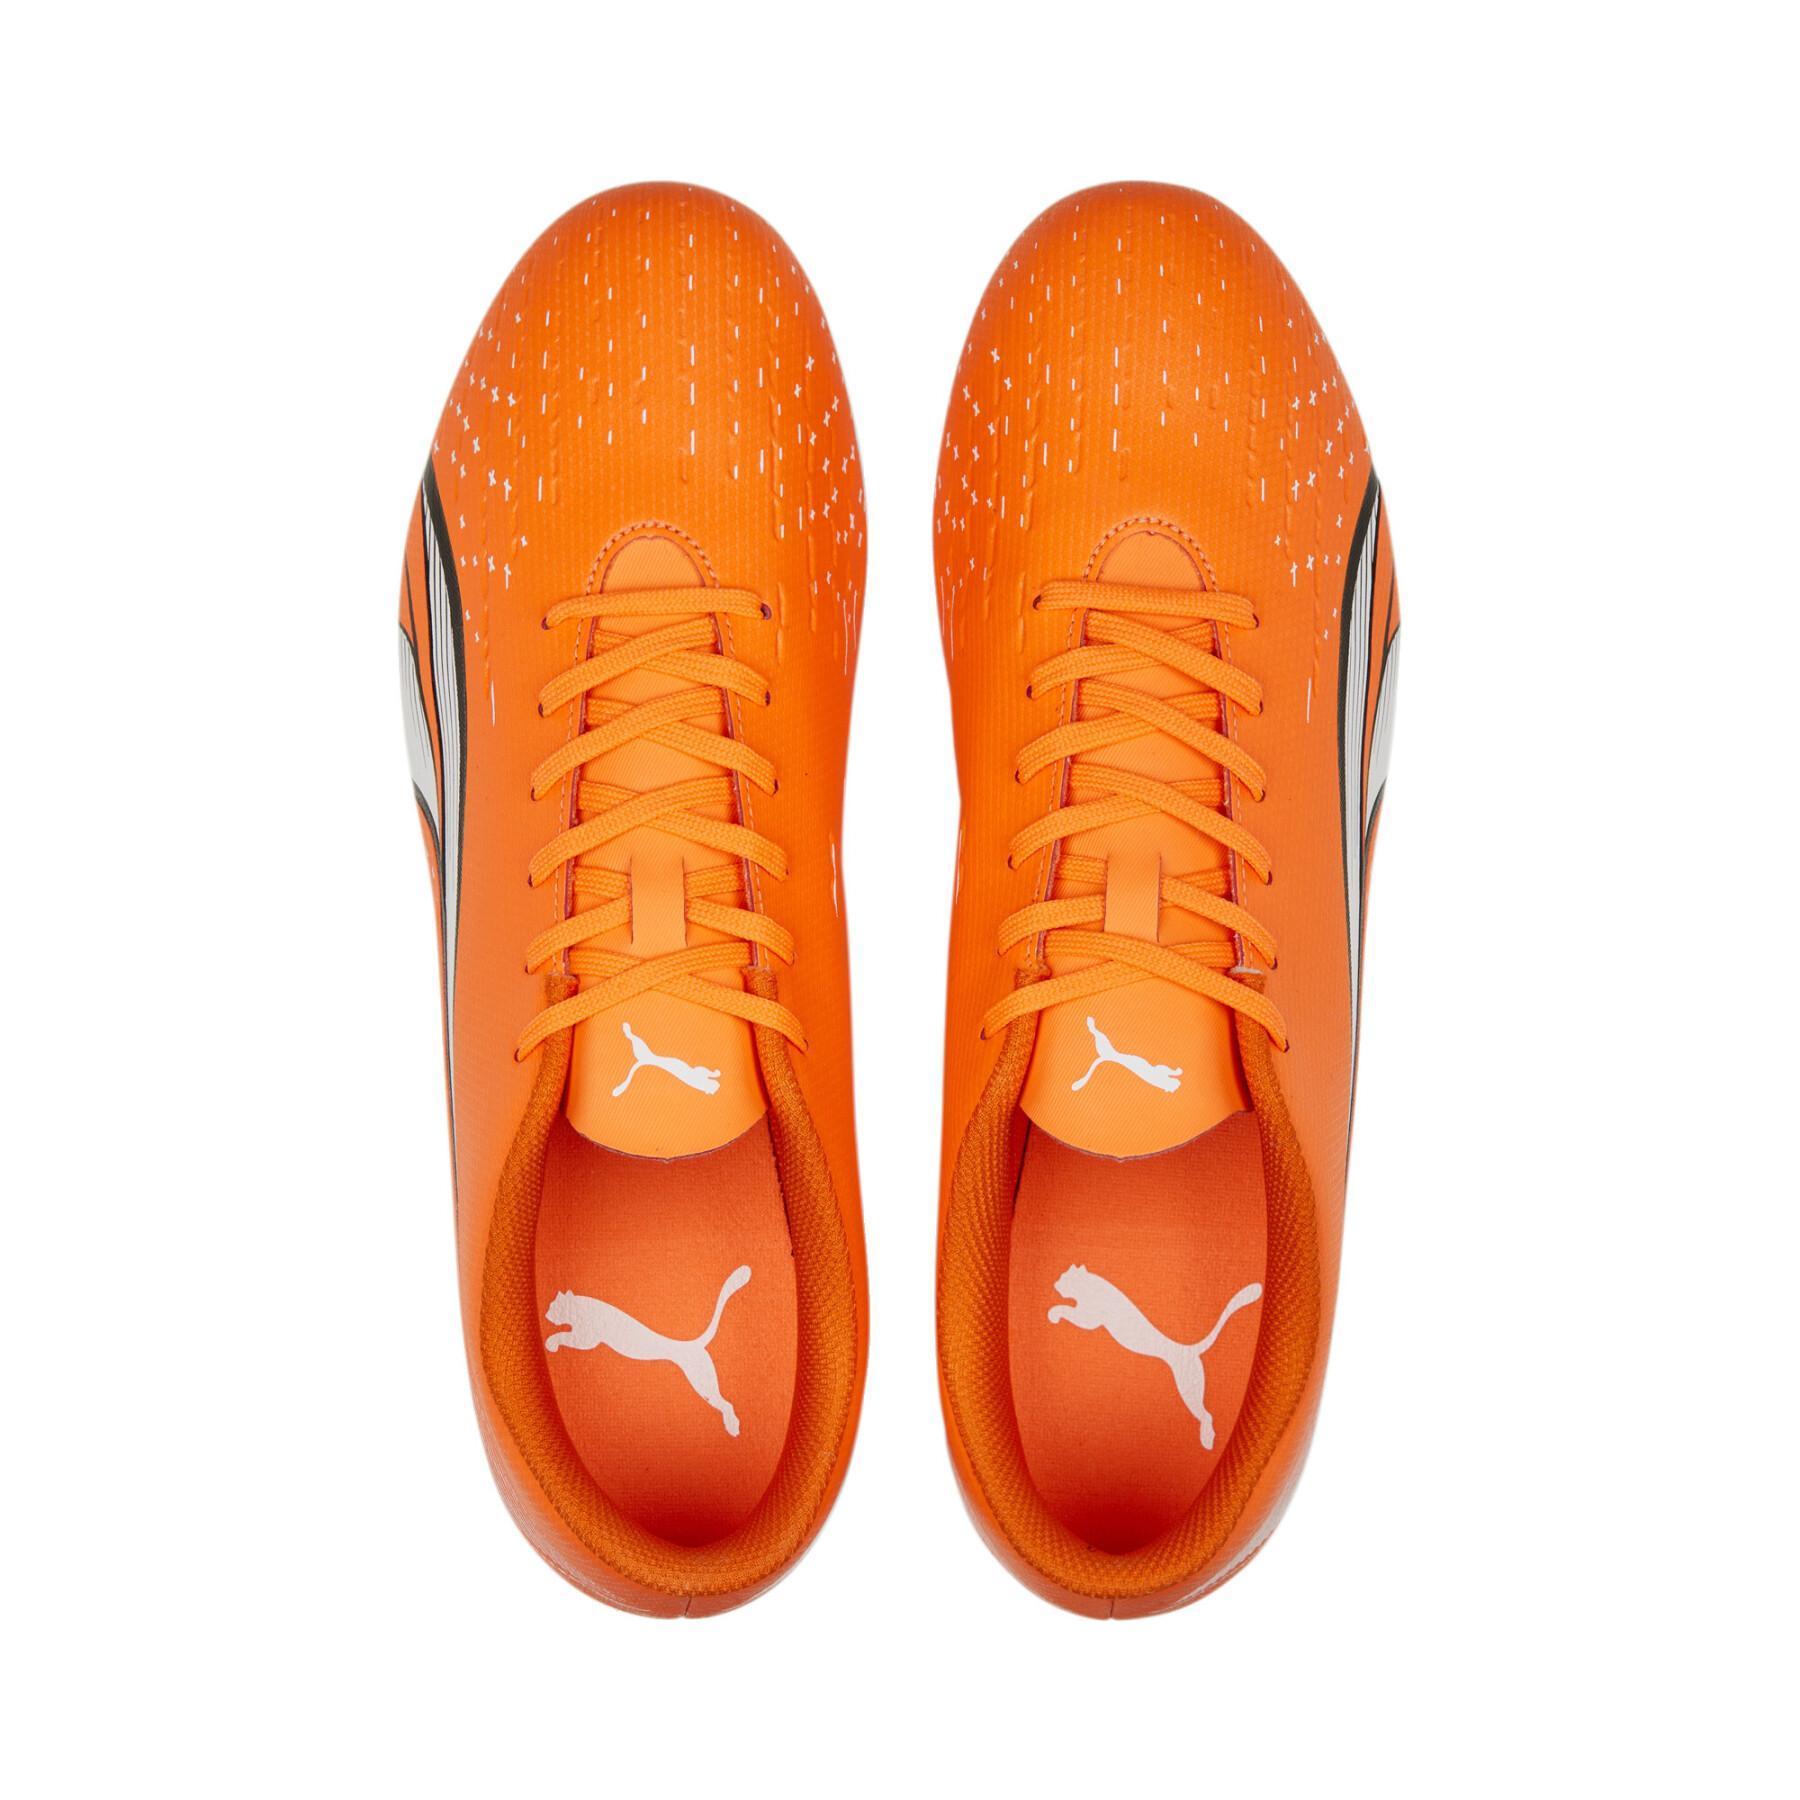 Sapatos de futebol Puma Ultra Play FG/AG - Supercharge